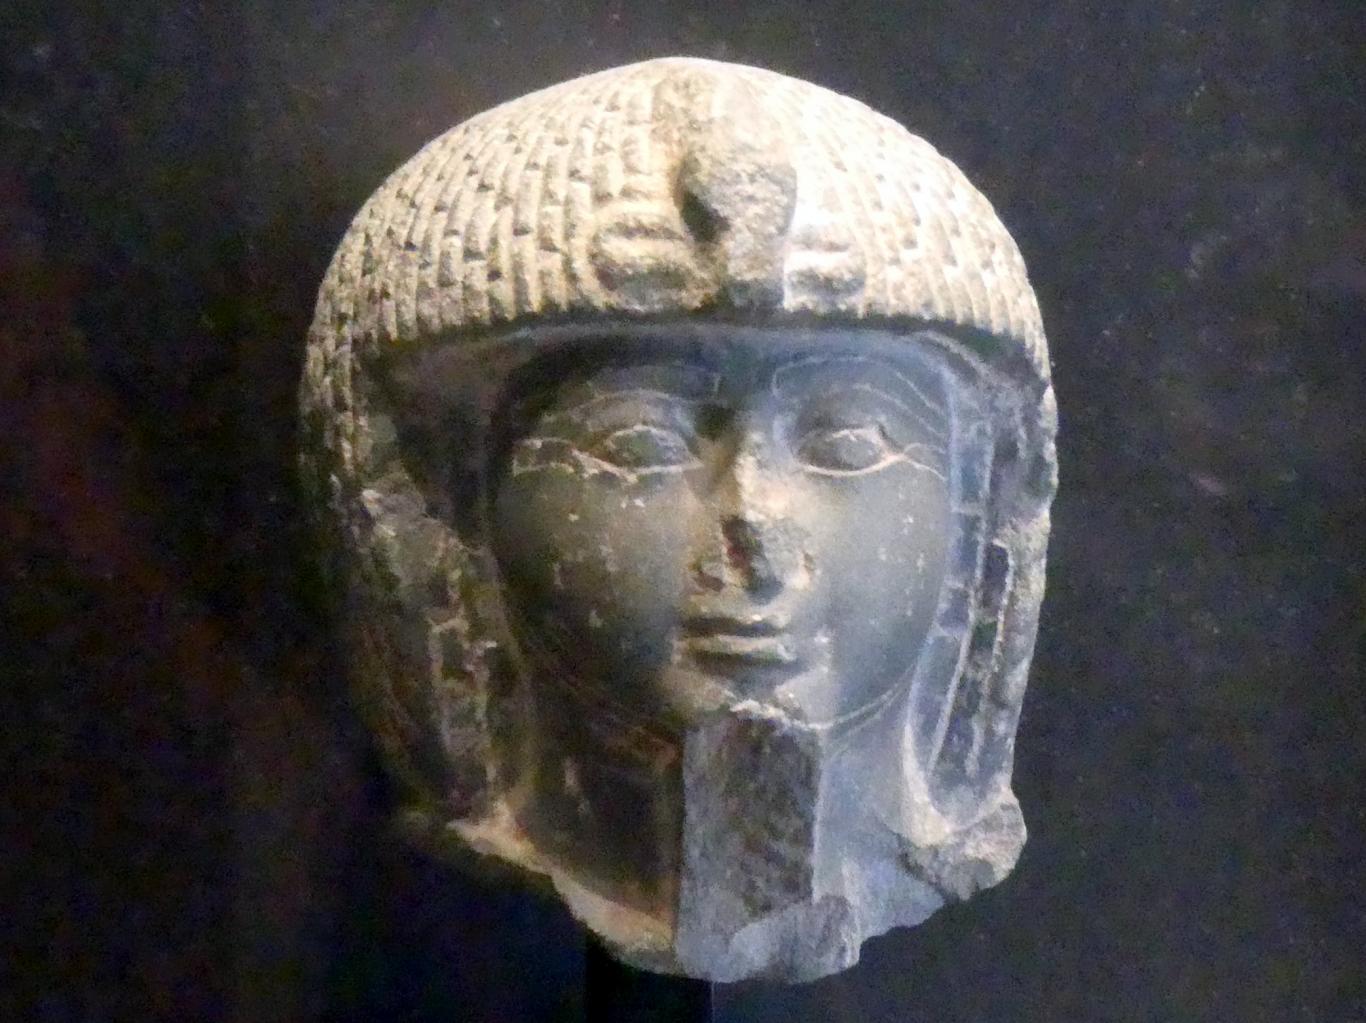 Kopf einer königlichen Stabträgerstatue, 19. Dynastie, 953 - 887 v. Chr., 1280 - 1150 v. Chr.